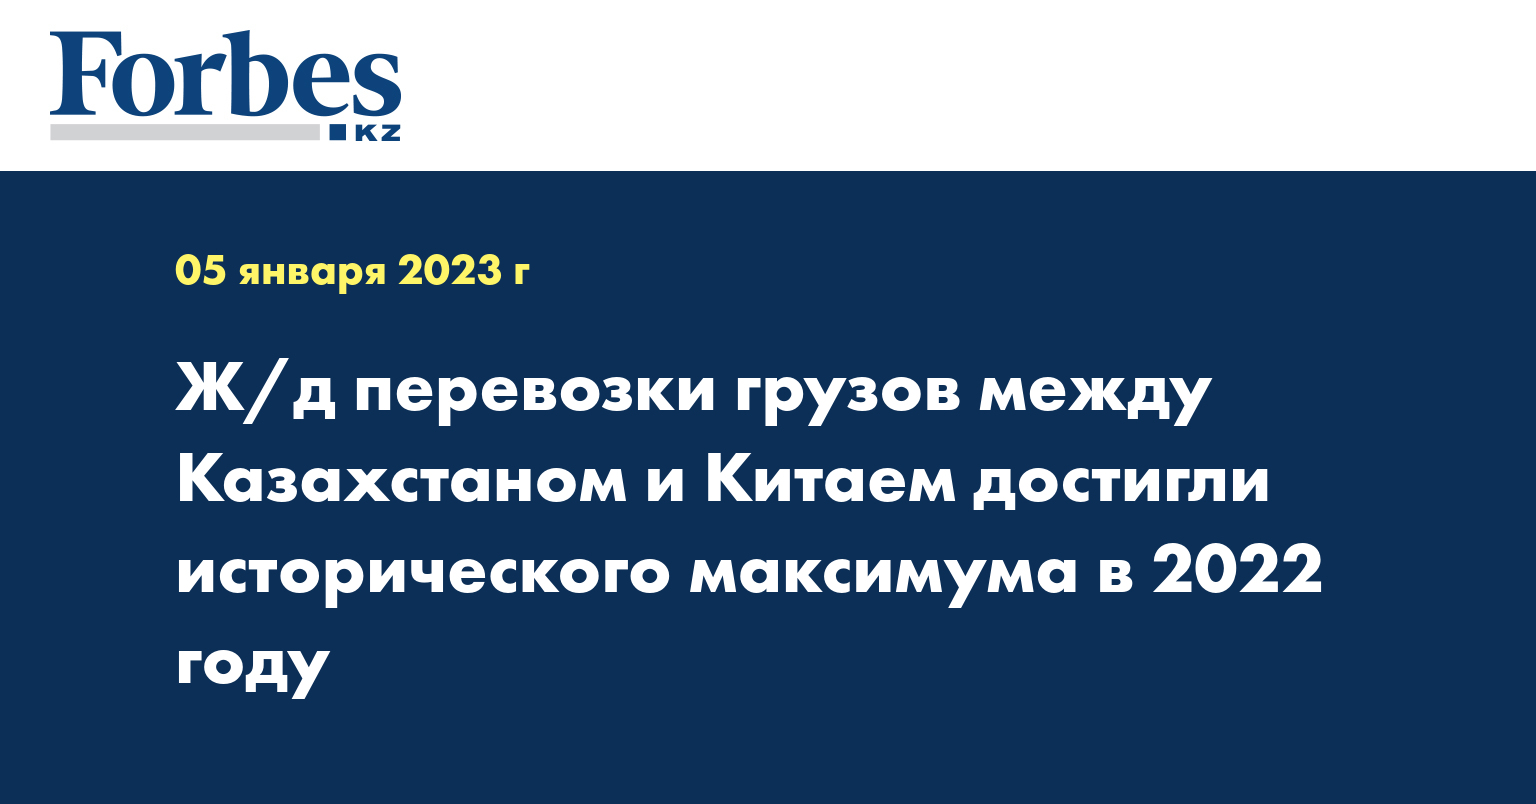 Ж/д перевозки грузов между Казахстаном и Китаем достигли исторического максимума в 2022 году